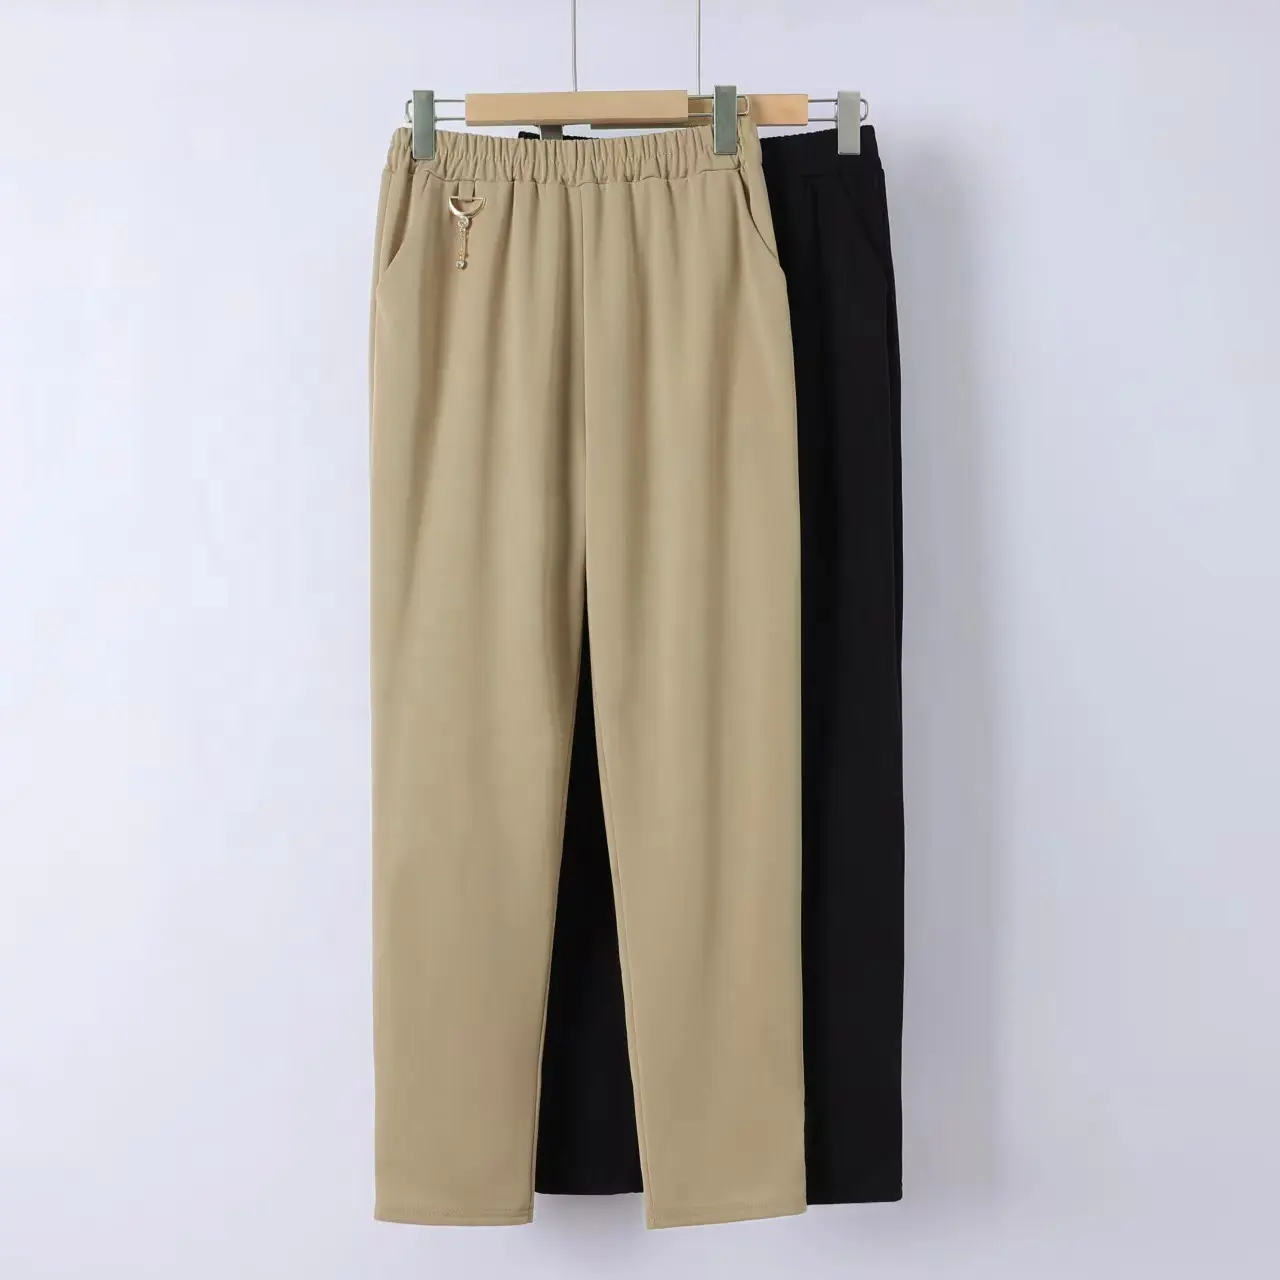 5XL kalem pantolon fabrika ucuz pantolon bayan iş bayanlar kadın bahar yaz Polyester artı boyutu cepli pantolon